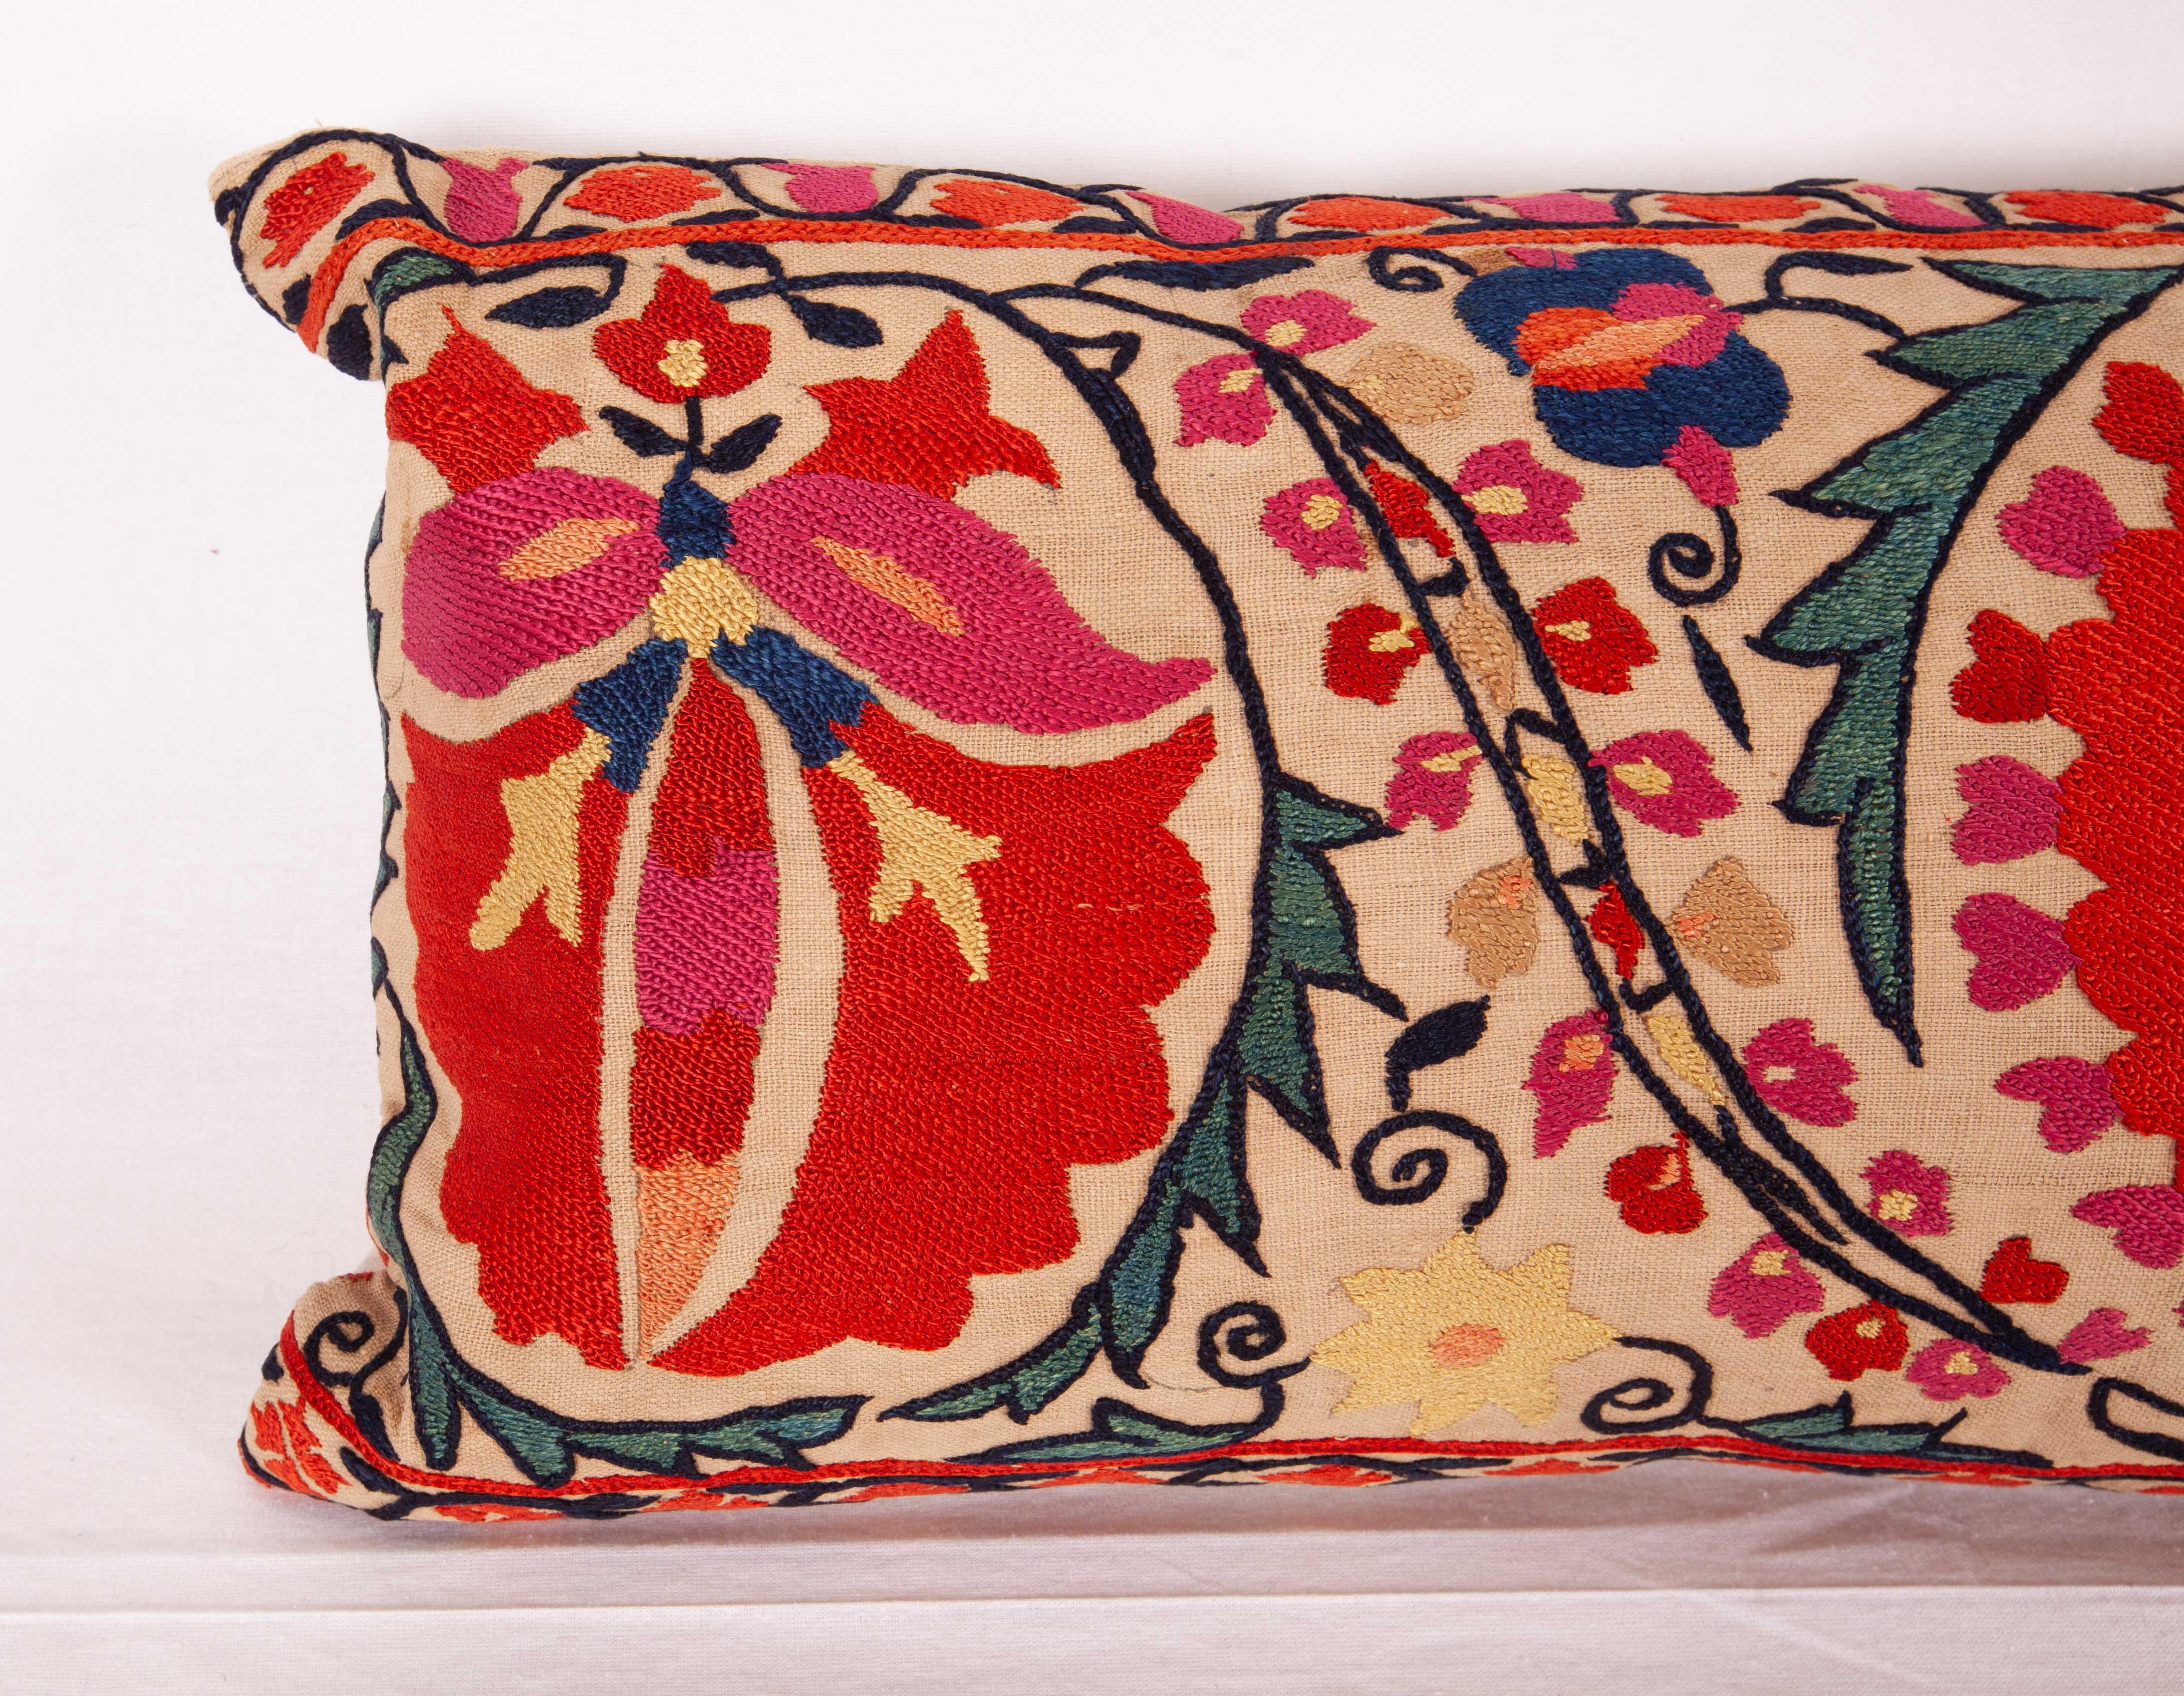 Uzbek Antique Suzani Lumbar Pillow Made from a Mid-19th Century Nurata Suzani